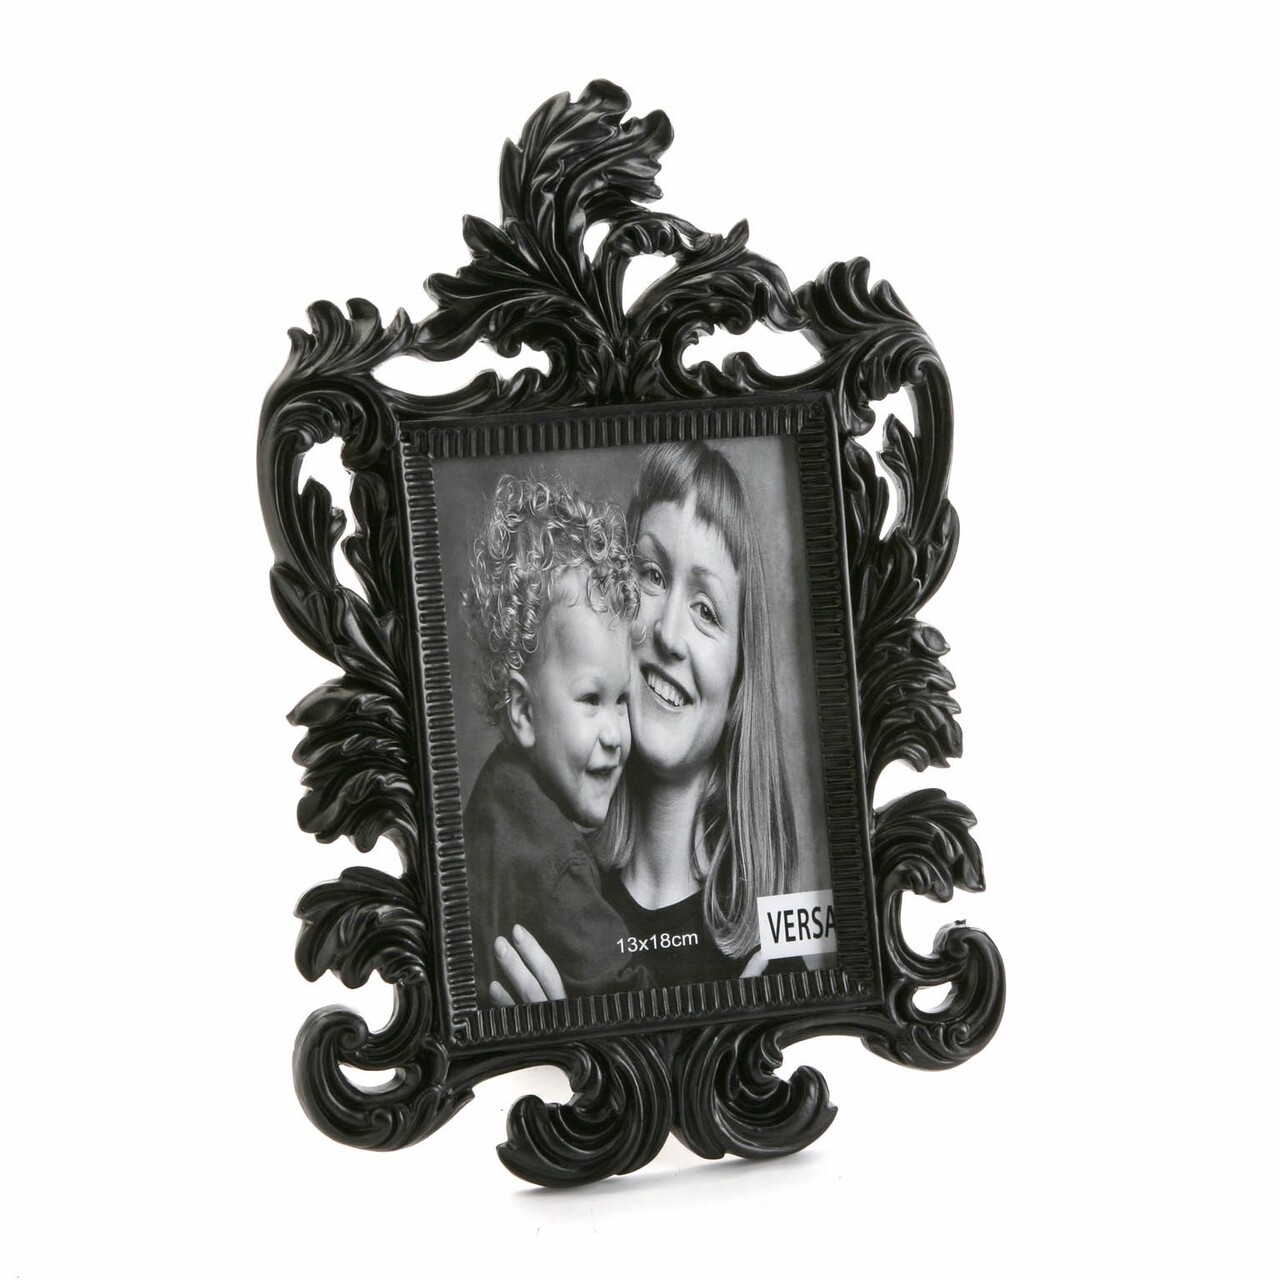 Gloria Fényképtartó, Versa, 13x18 cm, poligyanta, fekete